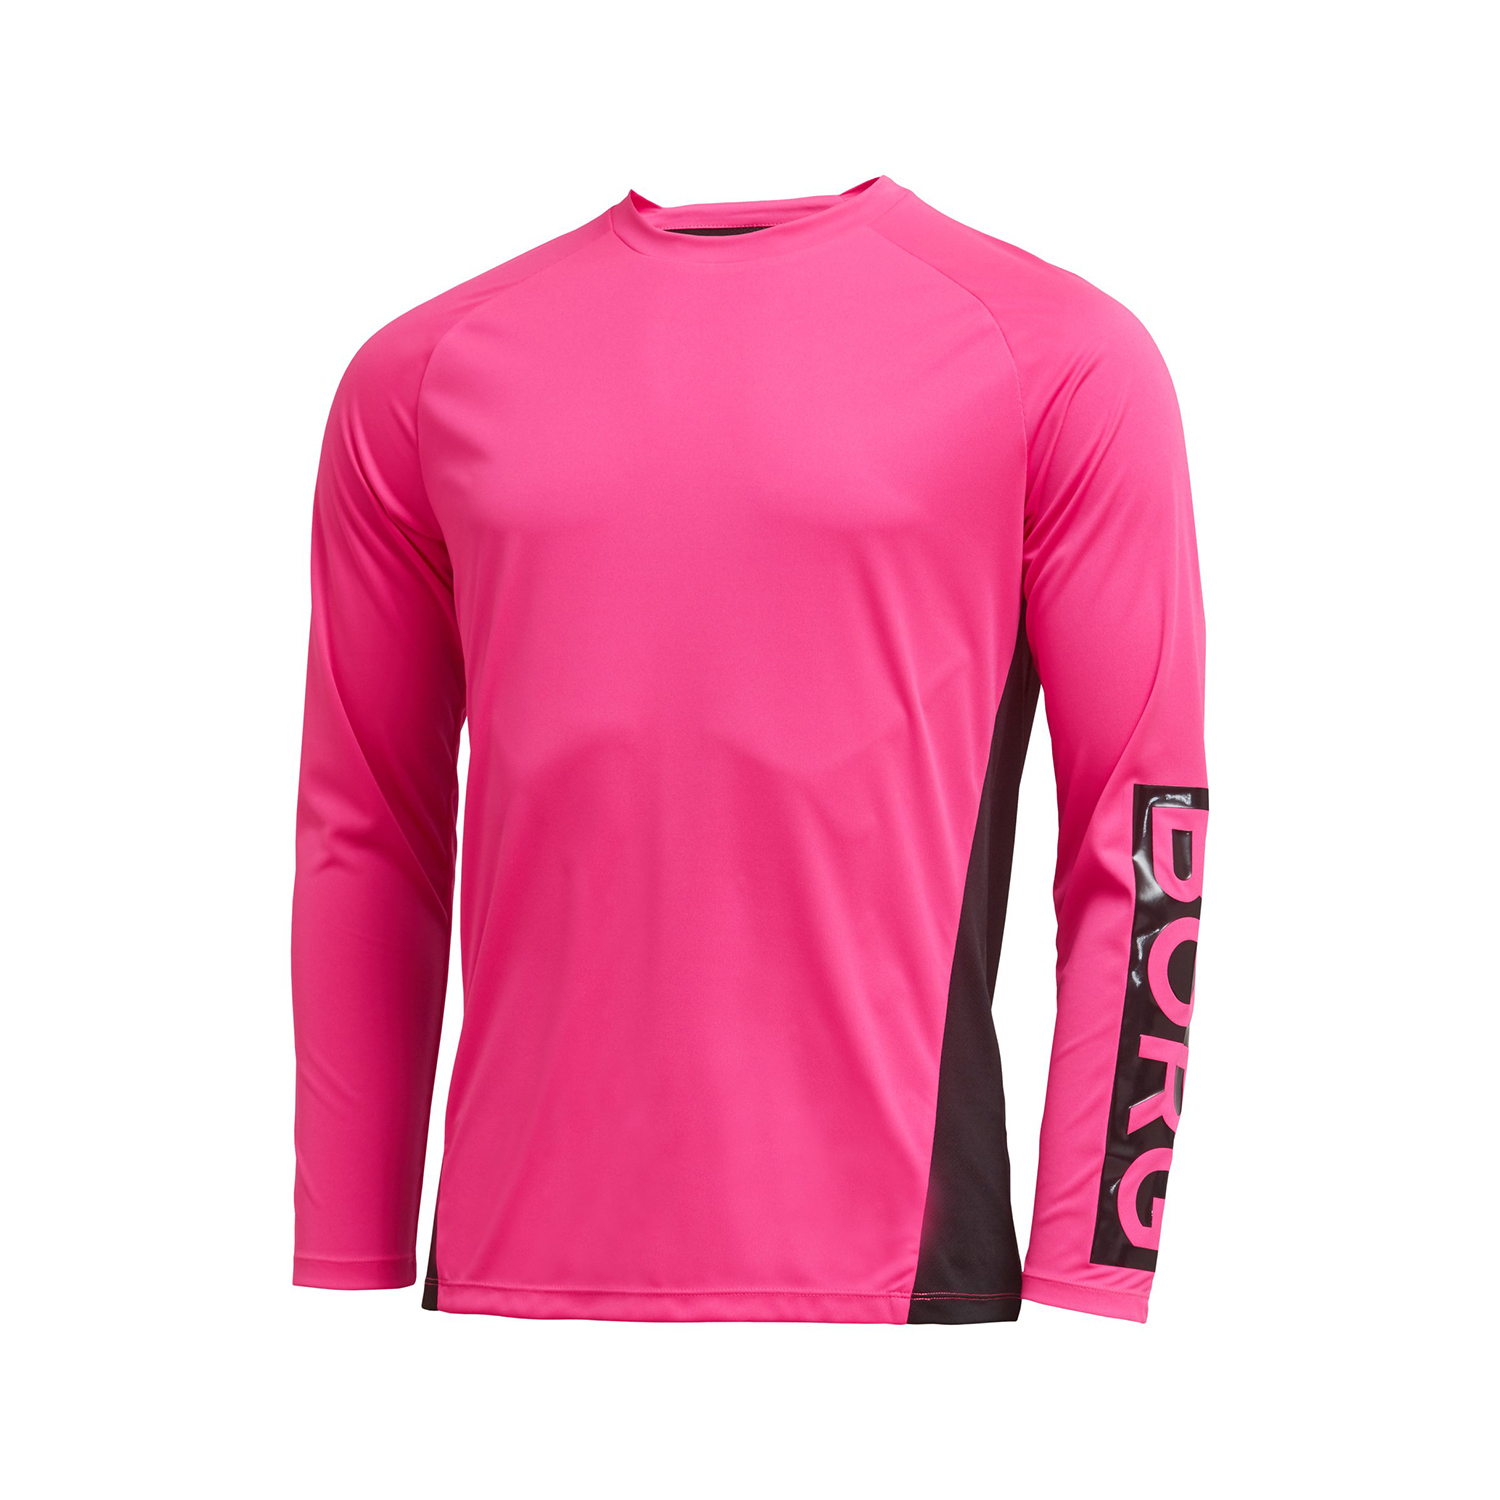 Ανδρικά/Ρούχα/Αθλητικά/Φούτερ-Μακρυμάνικα BJORN BORG - Ανδρική μπλούζα BJORN BORG μαύρη ροζ